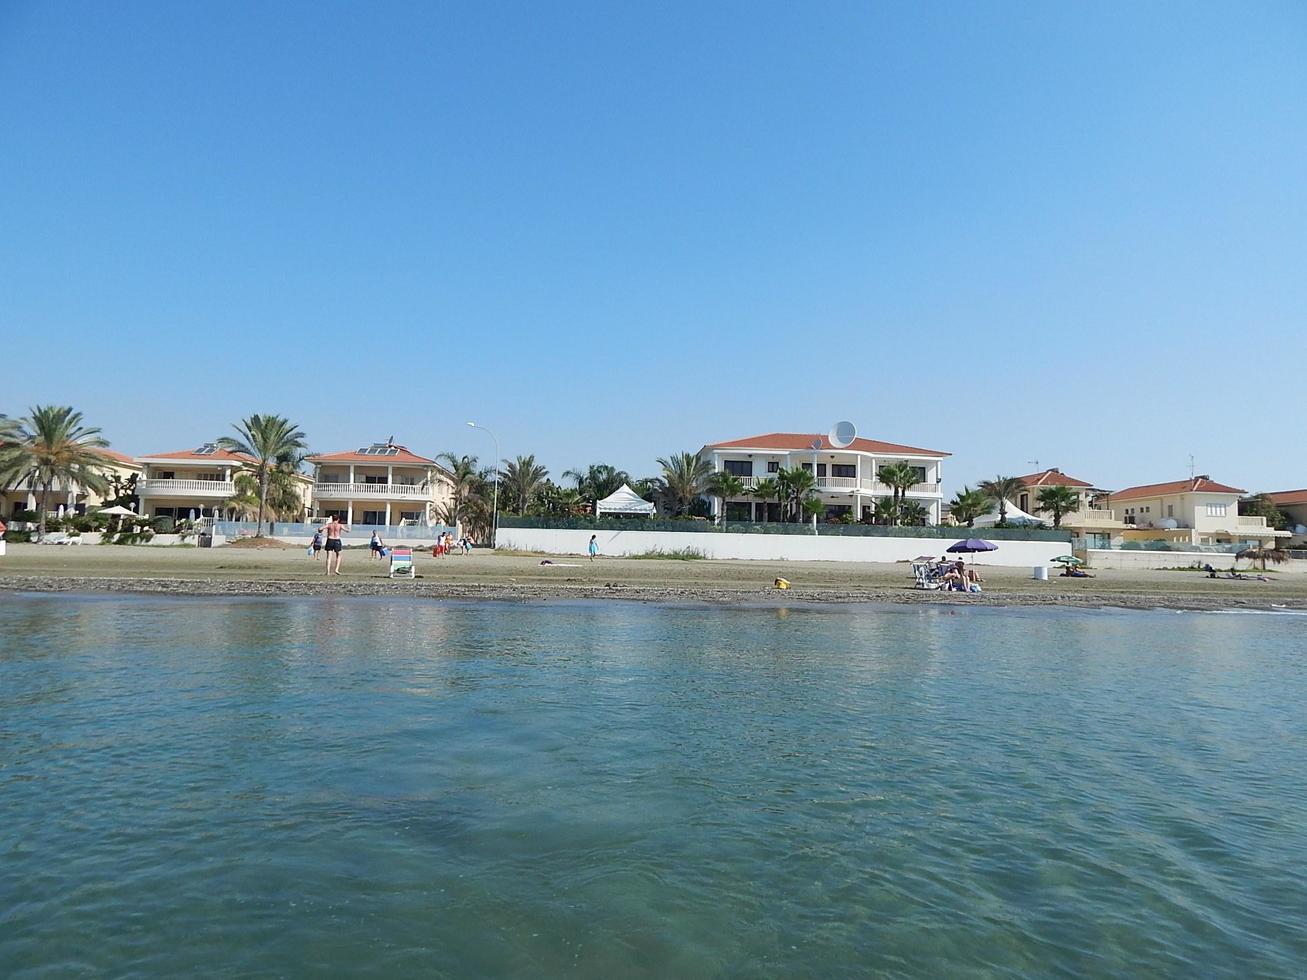 larnaca, cipro - 25 luglio 2015 turismo in città e resort foto